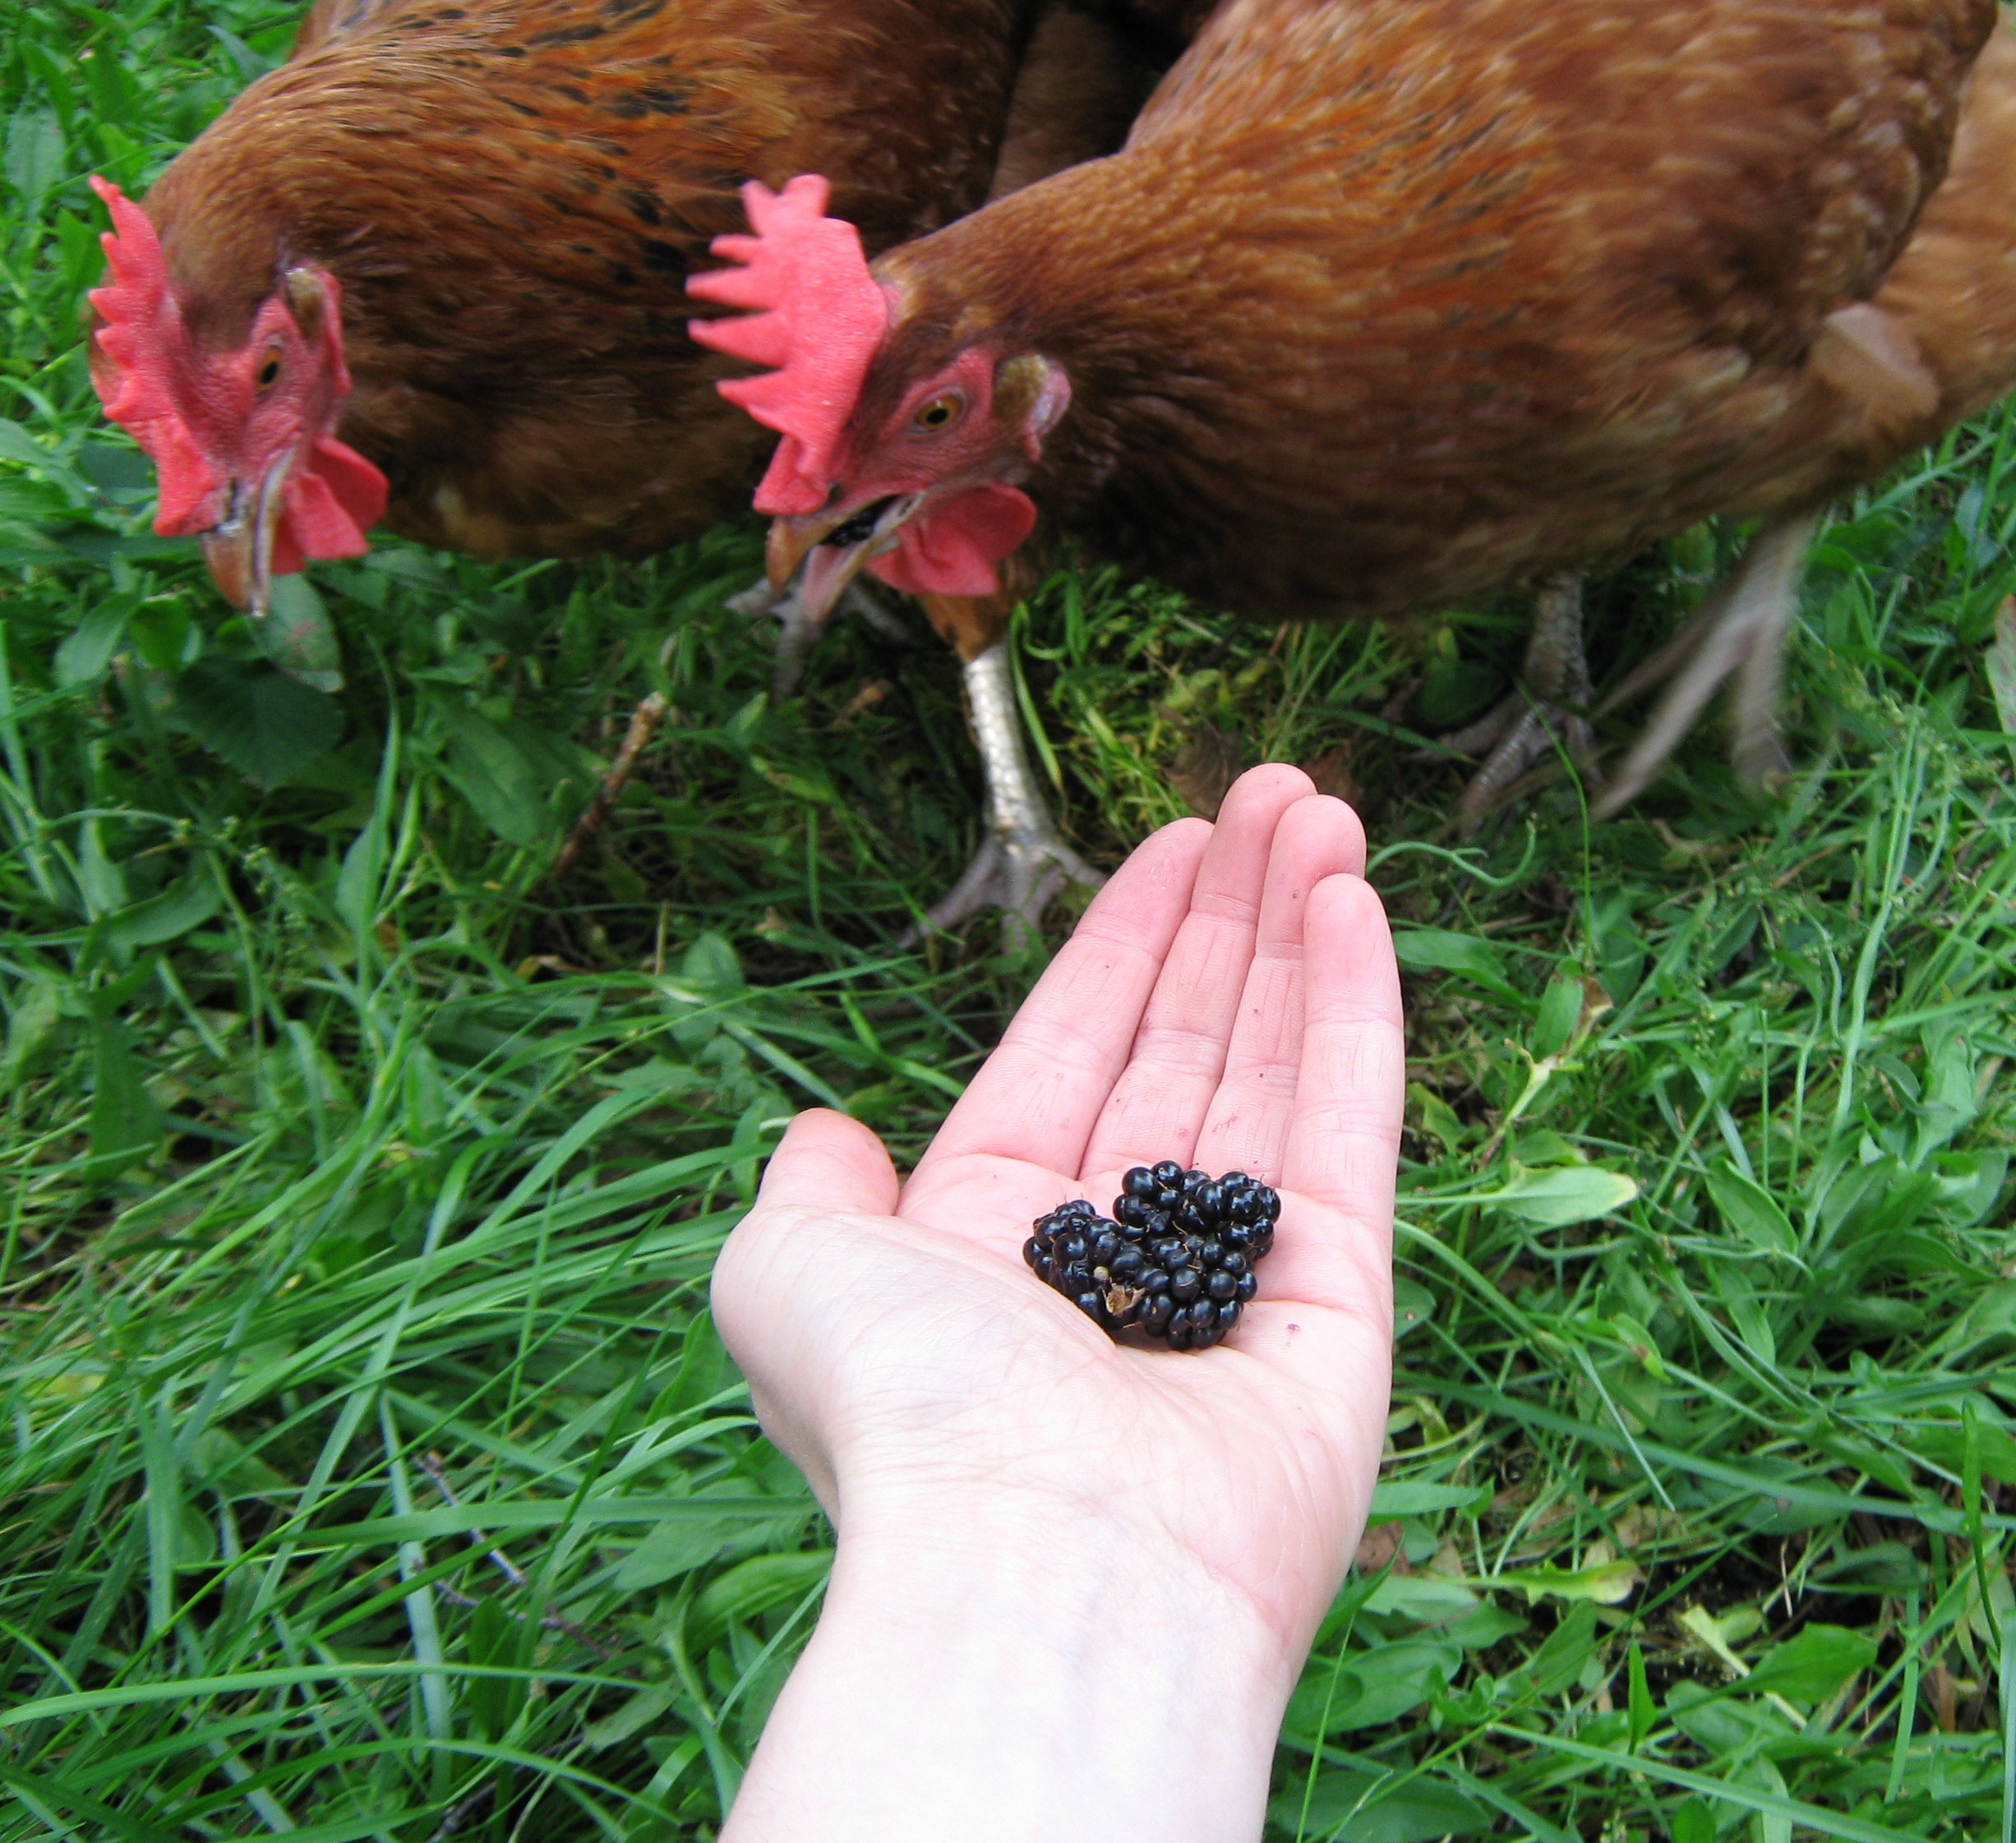 Jessica Umplebys Hühner lieben es, das Fallobst im Garten zu fressen